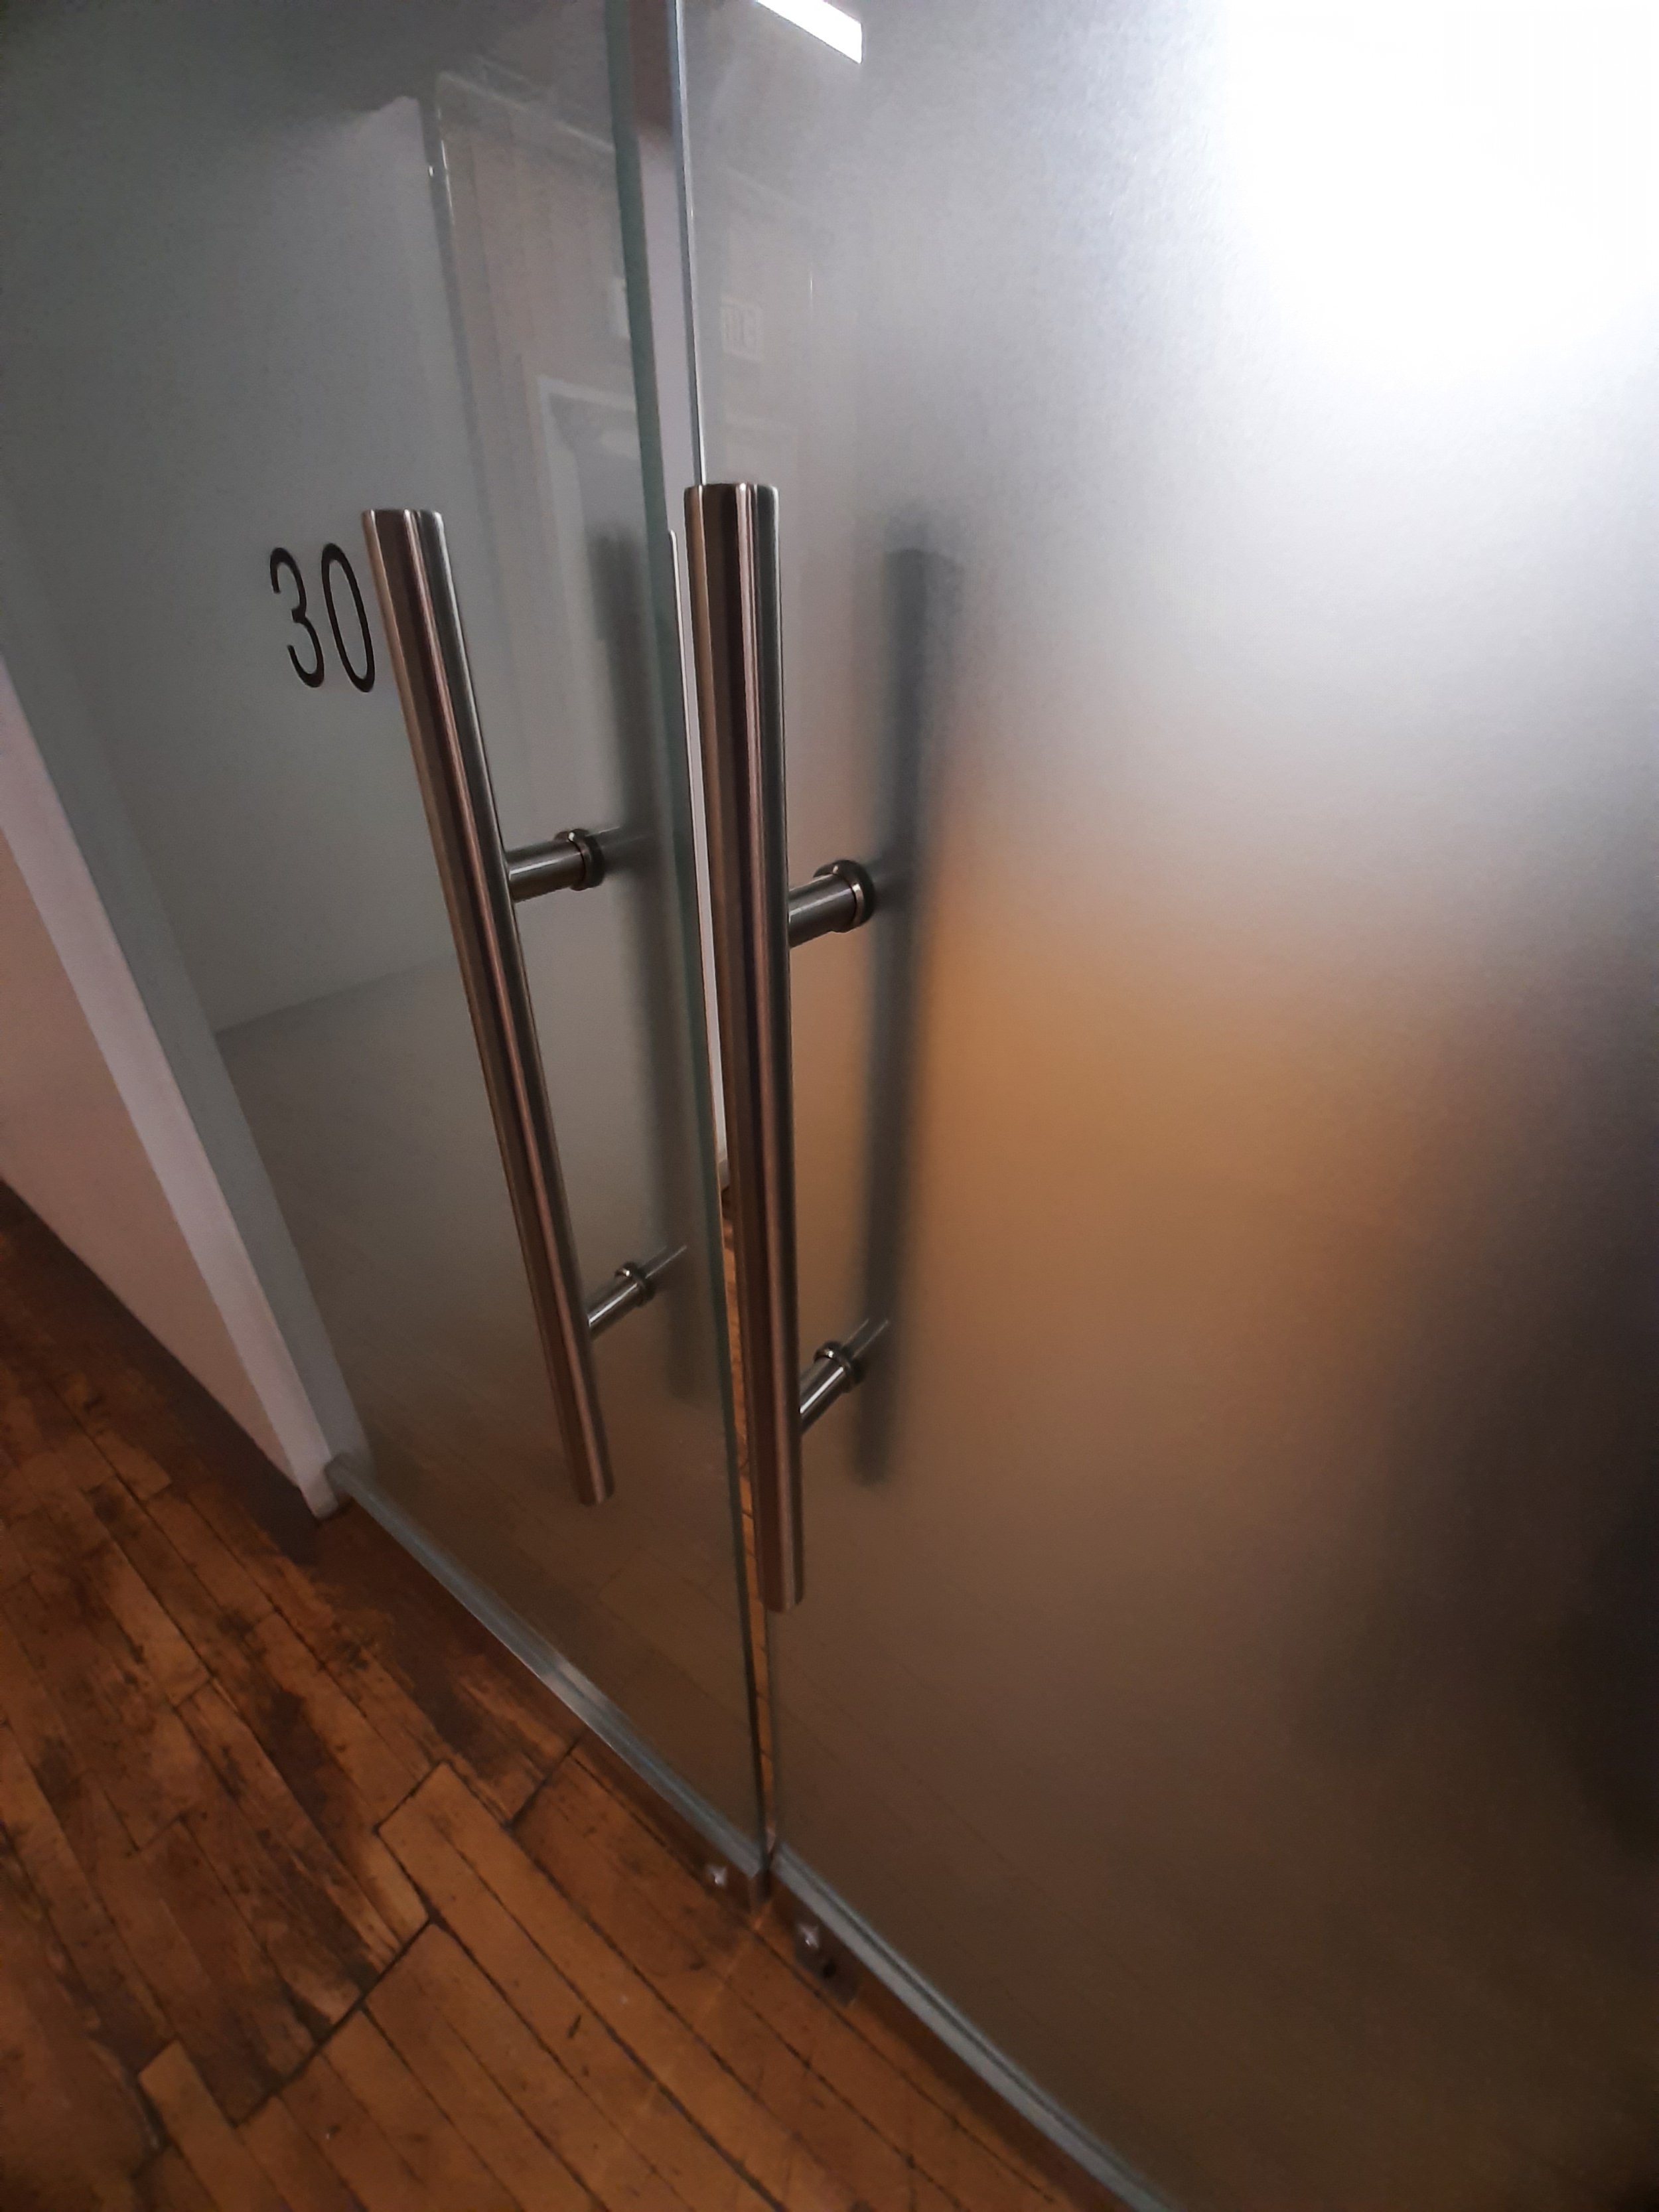 3rd floor unit 303 entrance door handle